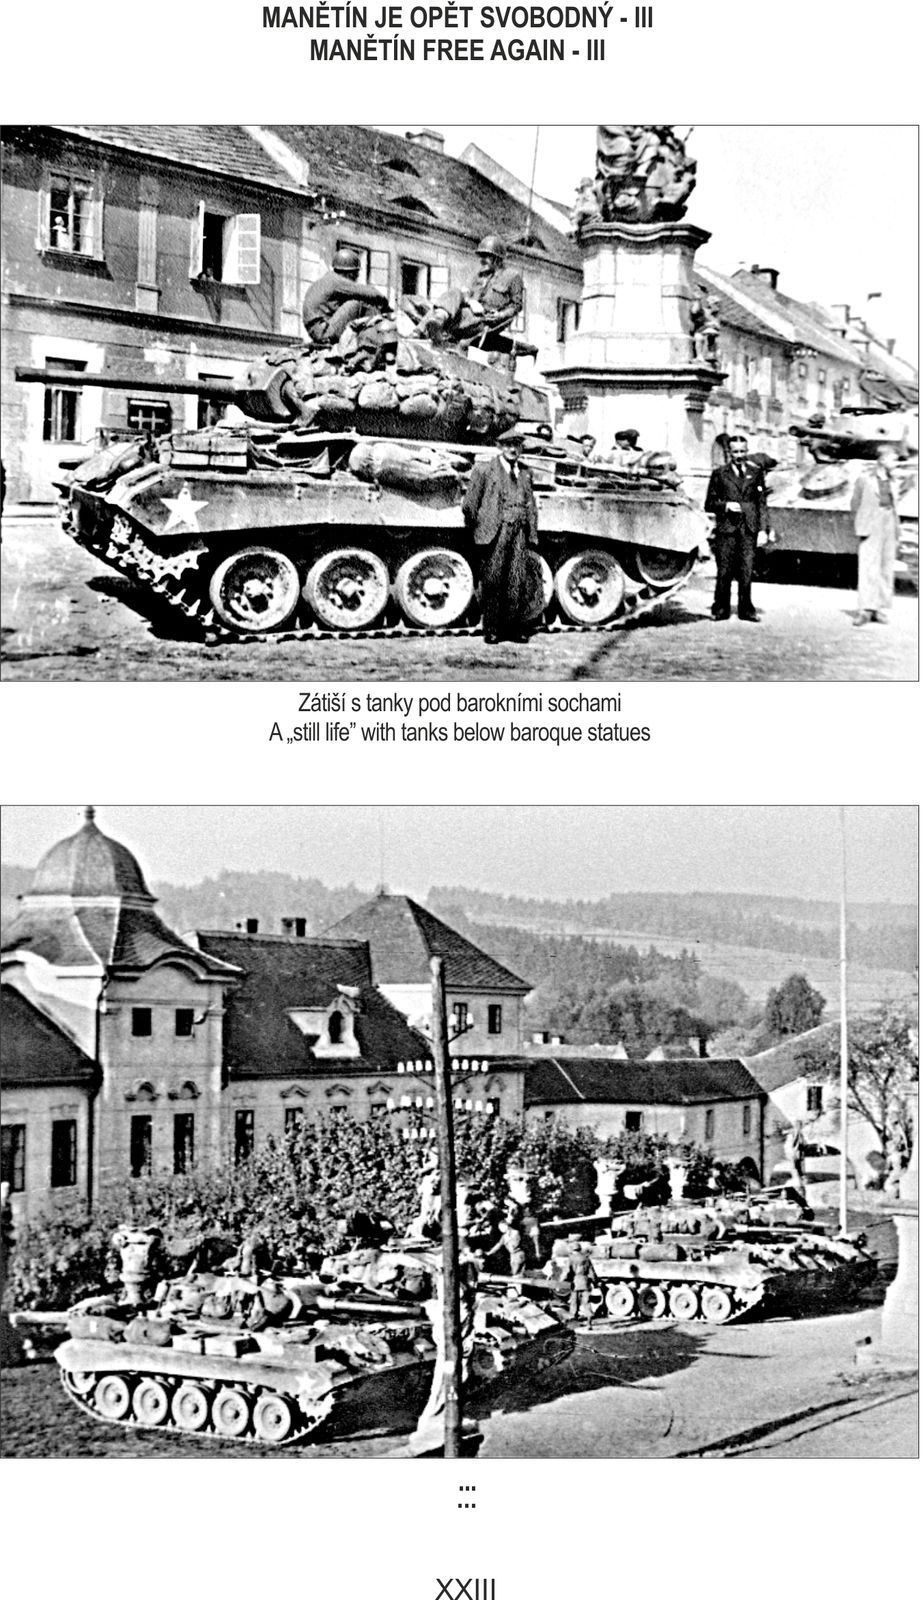 Manětín opět svobodný: Tankové zátiší pod barokním sousoším